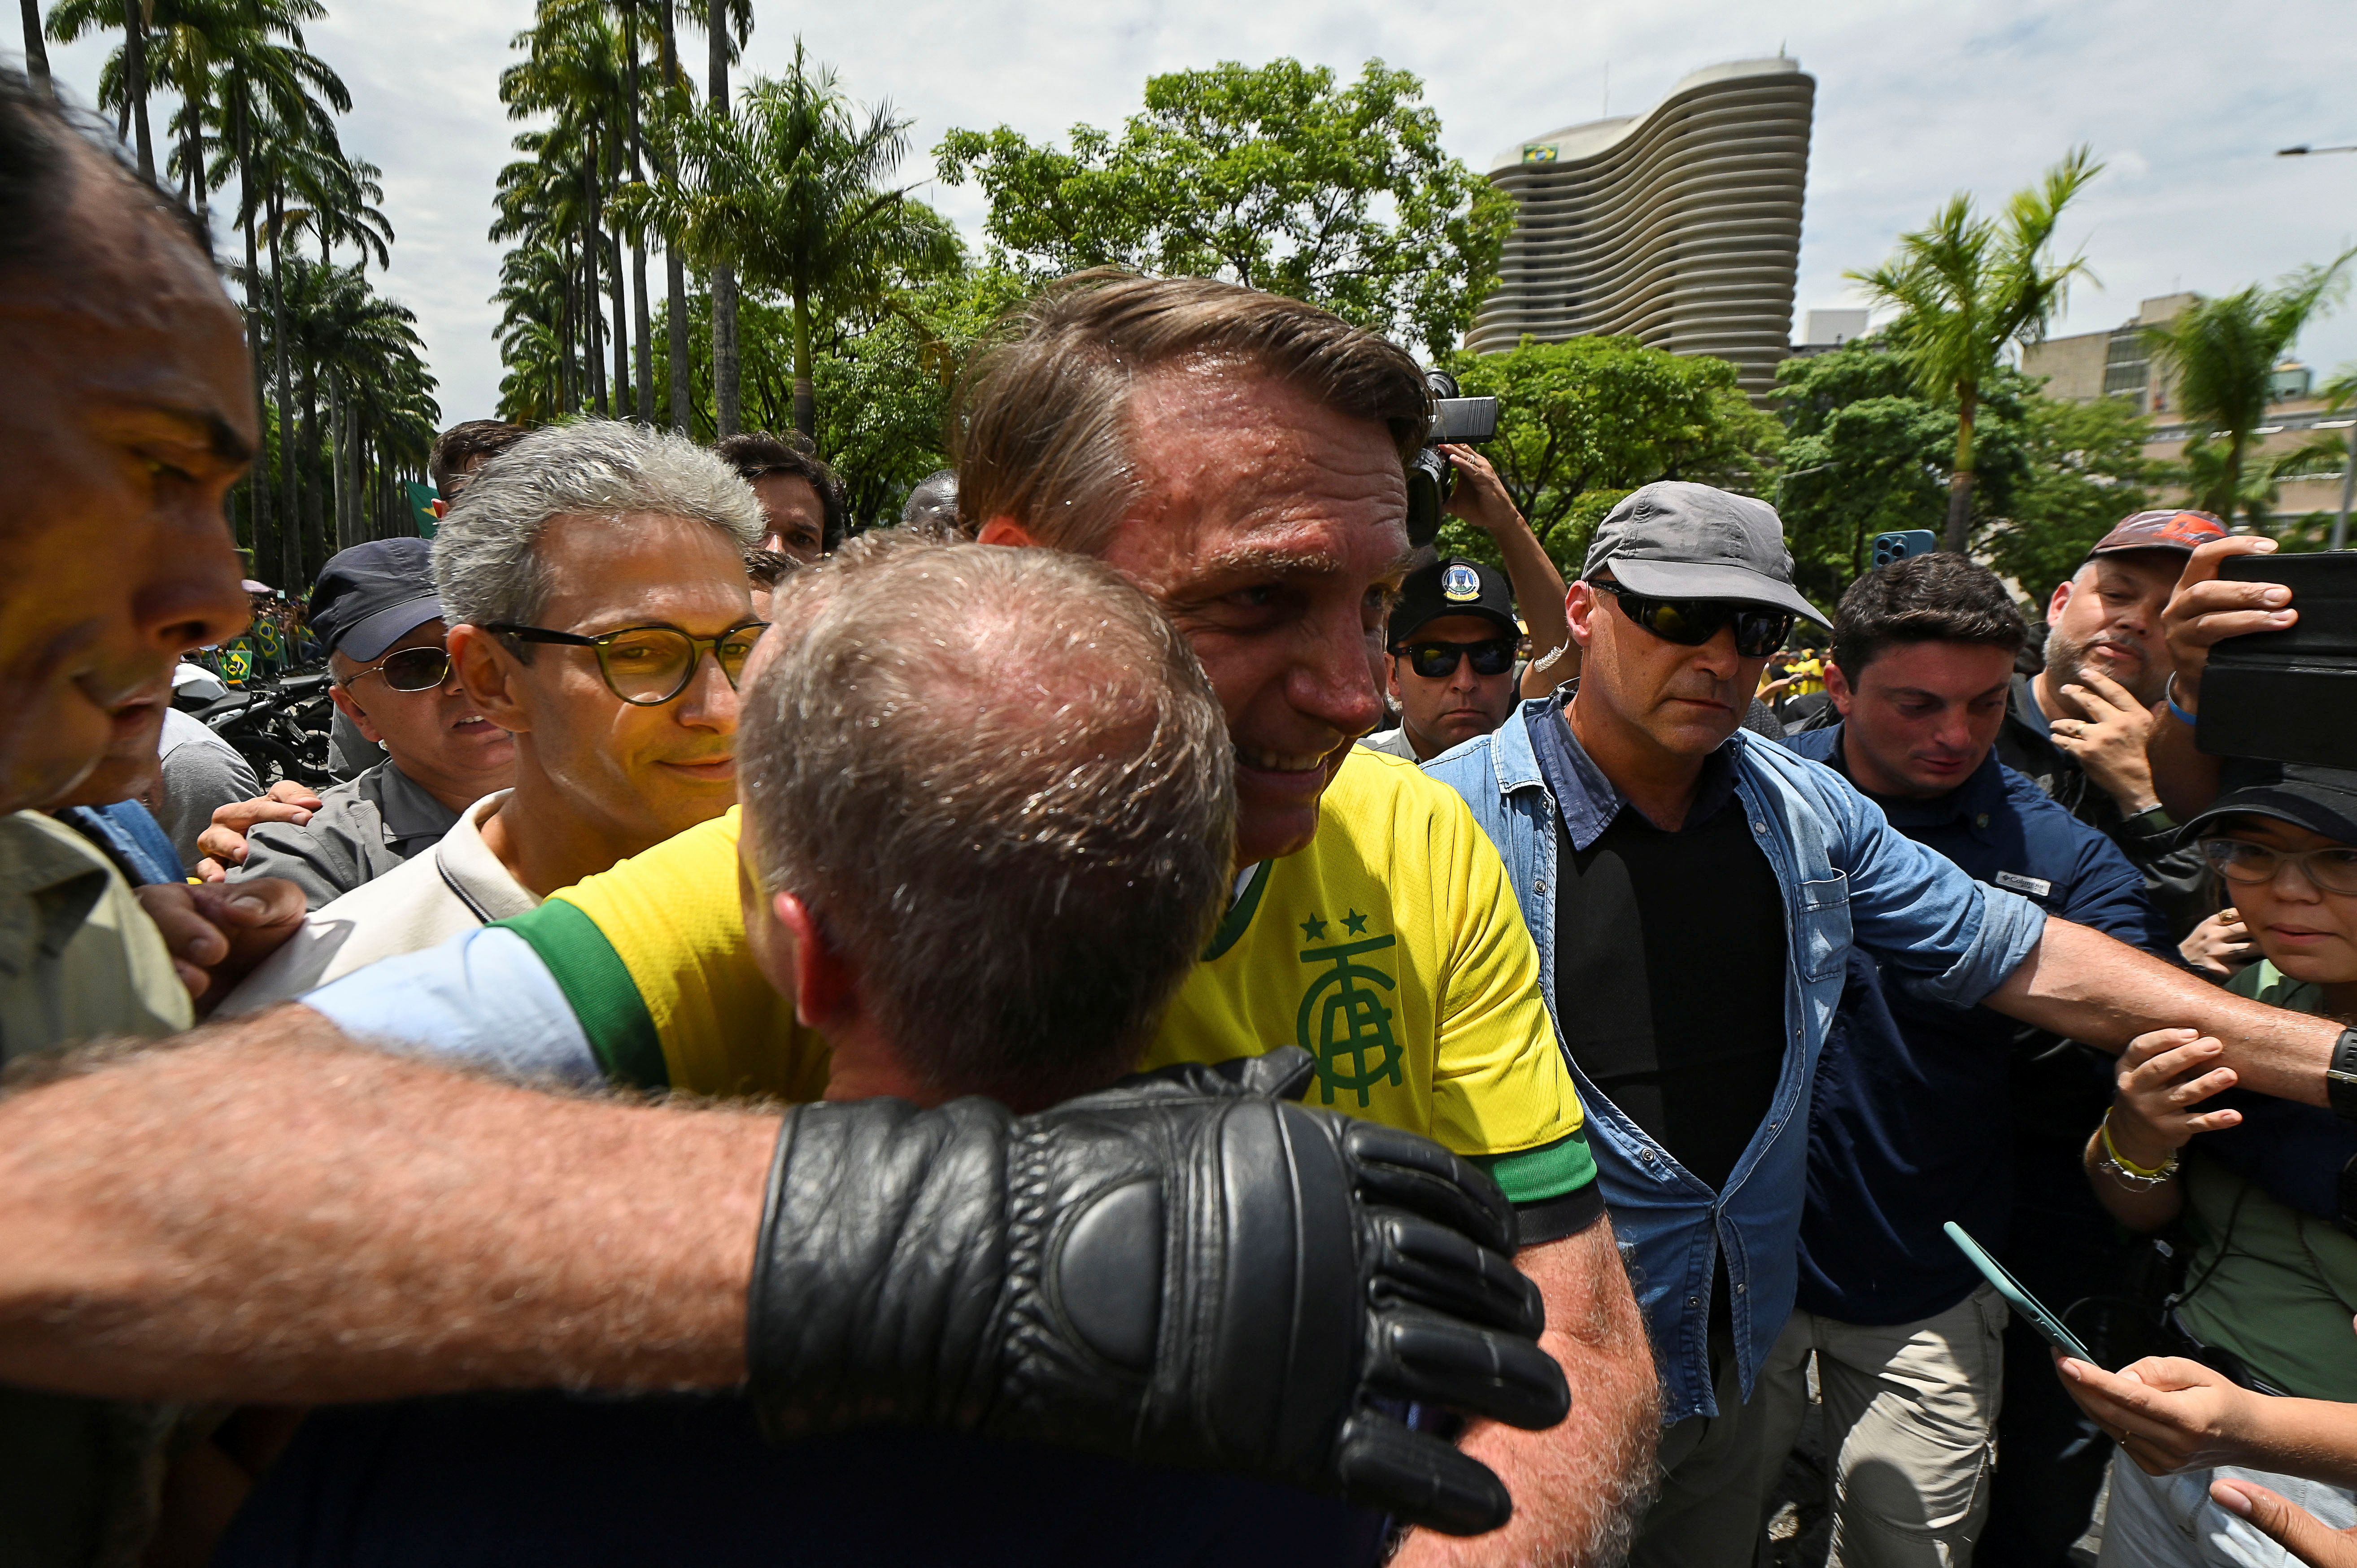 El presidente de Brasil y candidato a la reelección, Jair Bolsonaro, abraza a un simpatizante durante su cierre de campaña en Belo Horizonte, Brasil, el 29 de octubre de 2022 (REUTERS/Joao Guilherme Arenazio)